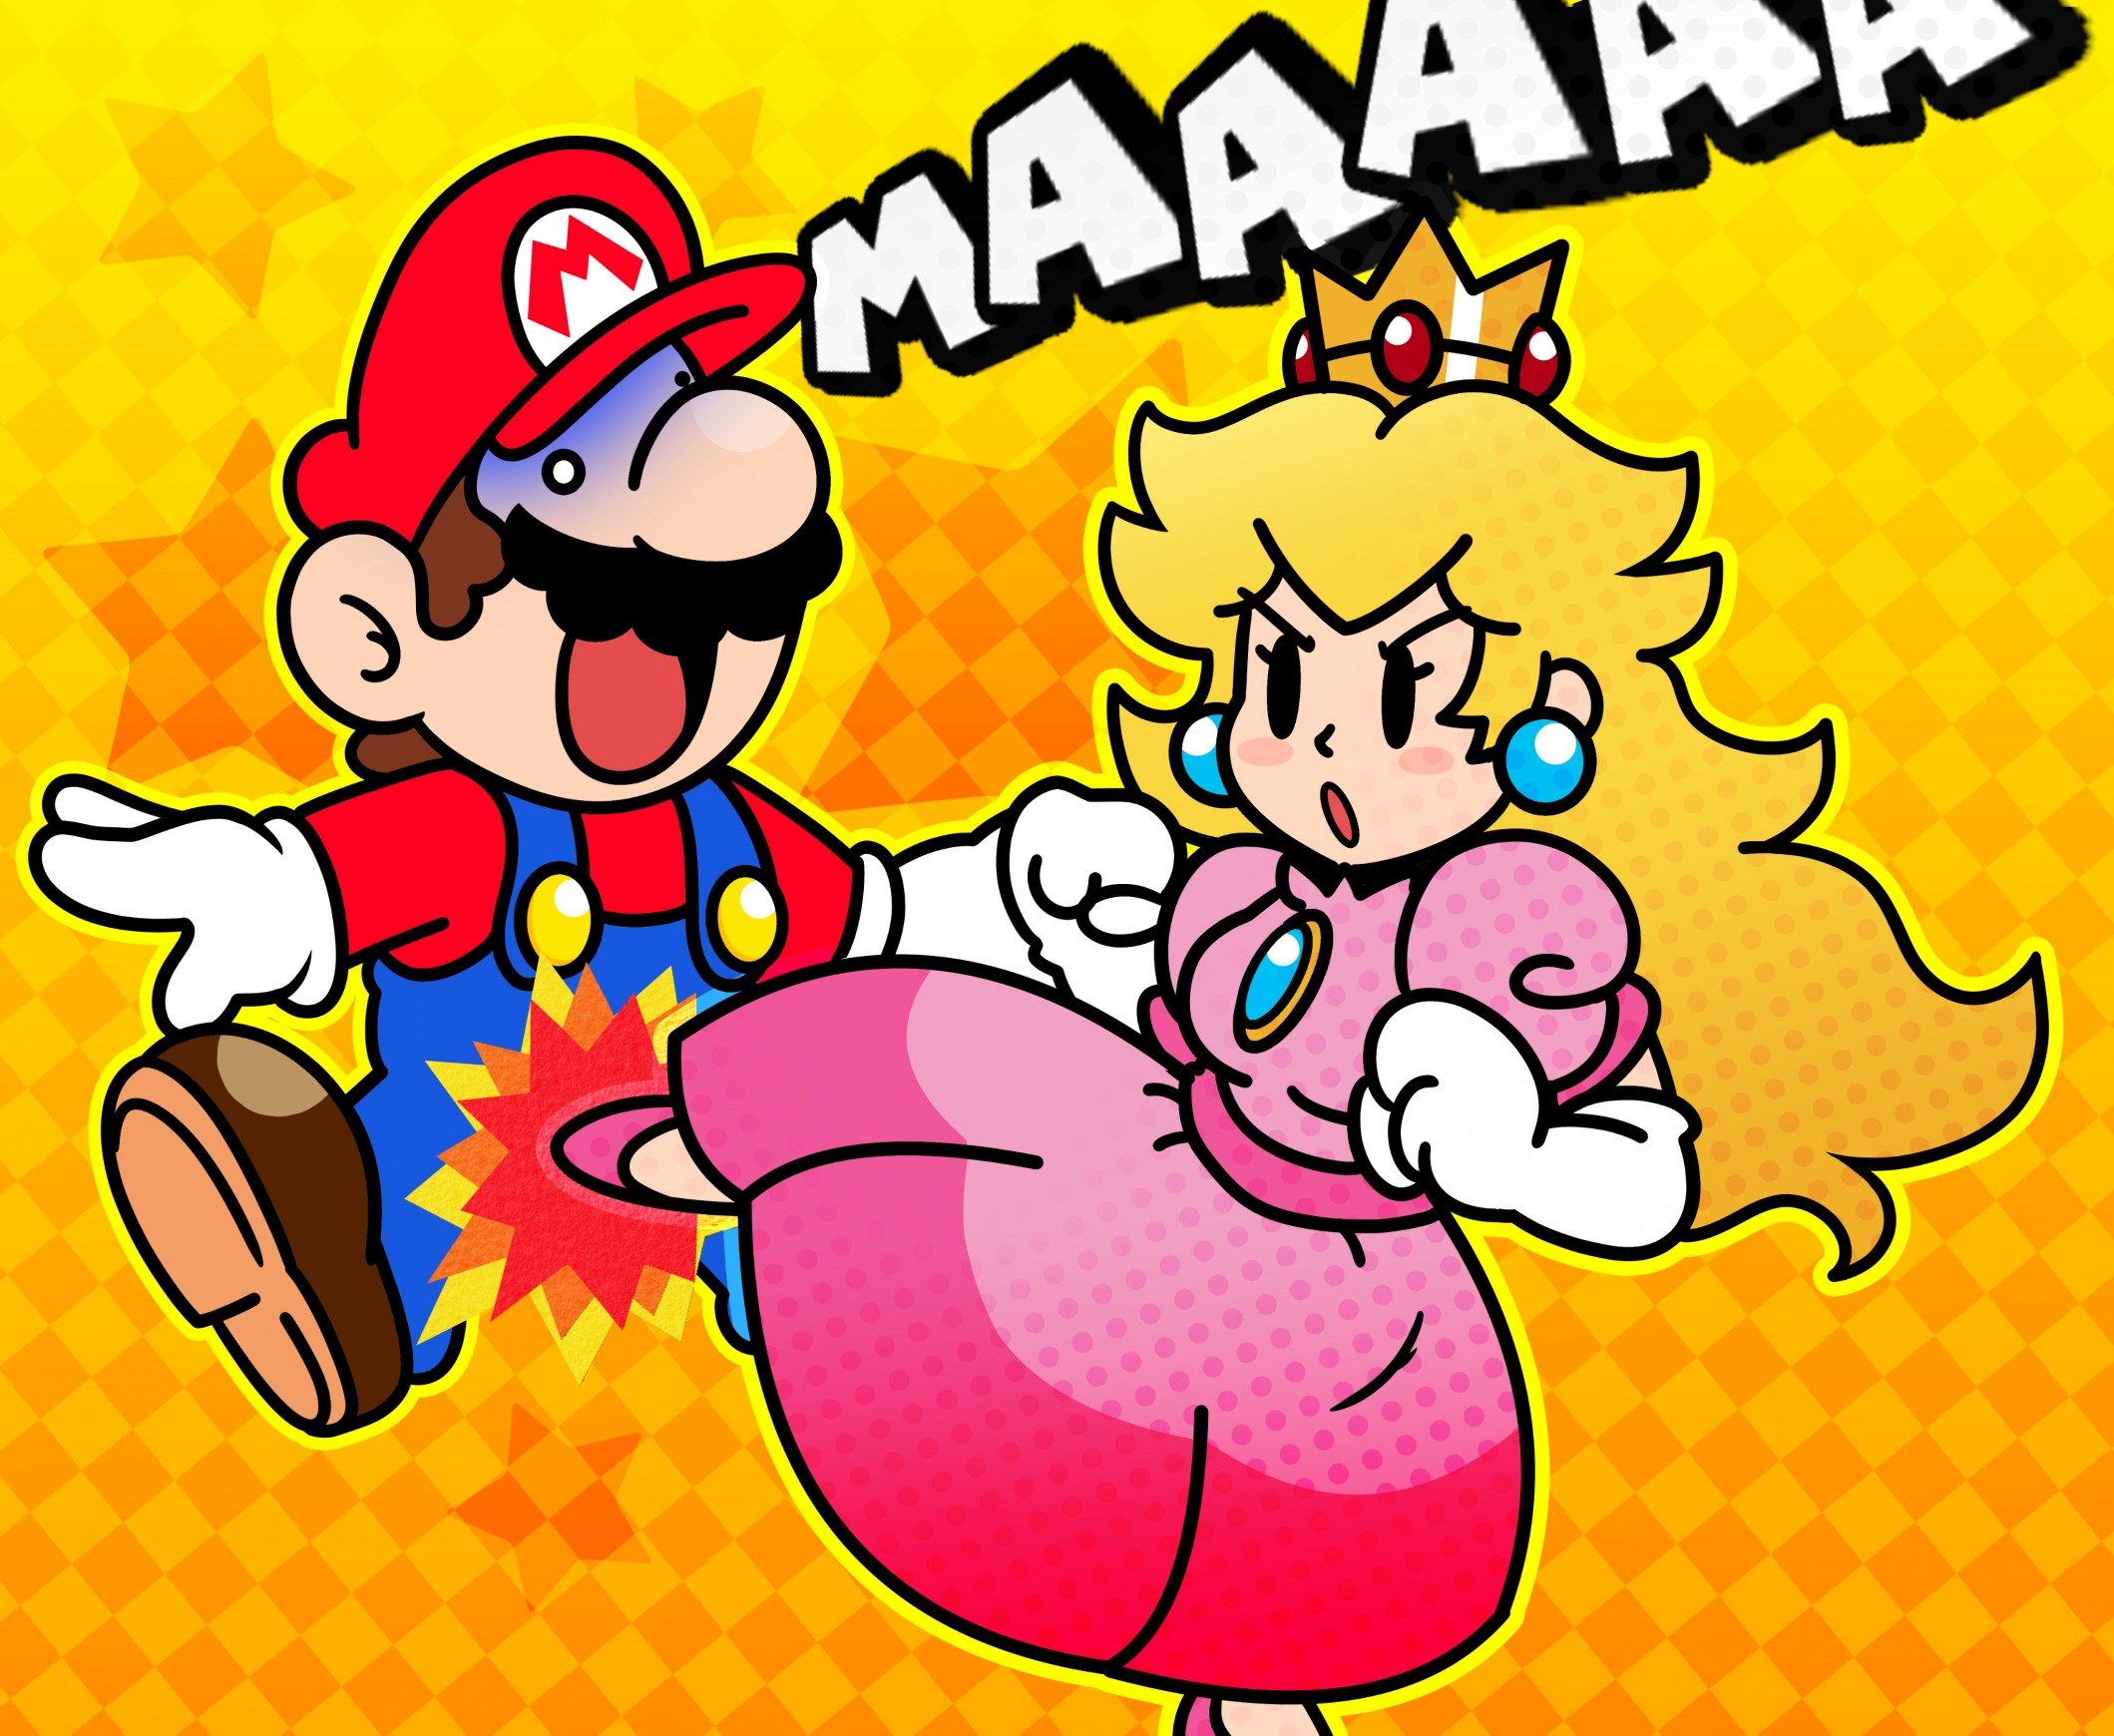 High Quality Princess peach kicks Mario in the balls Blank Meme Template